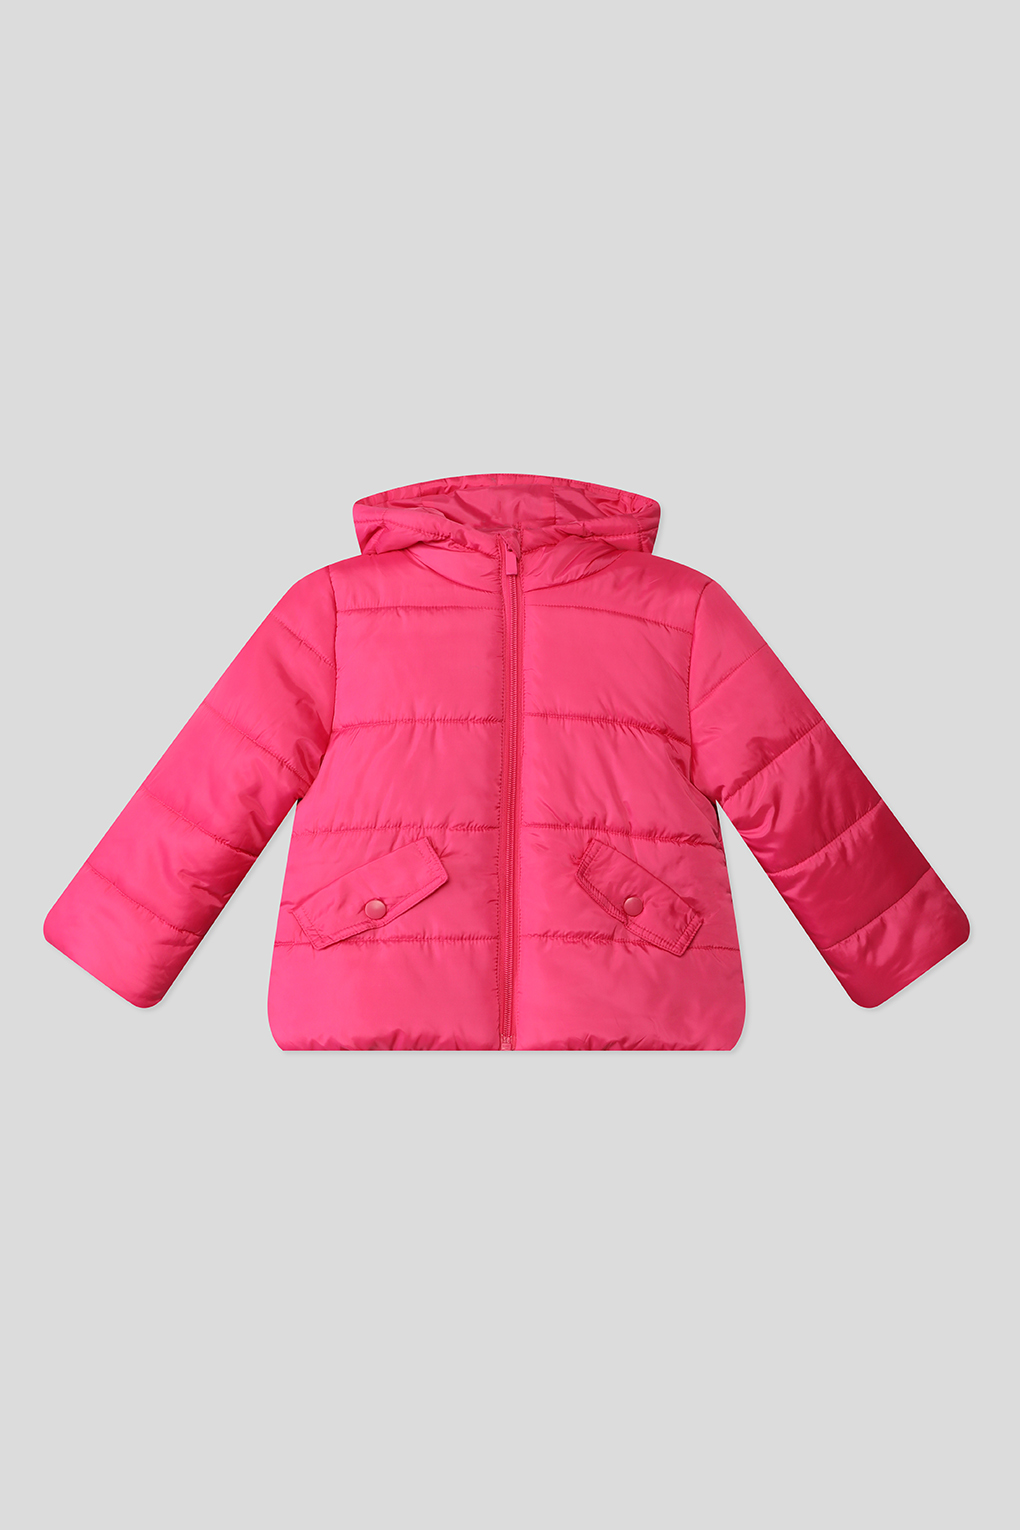 фото Куртка утепленная для девочек ovs 1387236, розовый 134р.